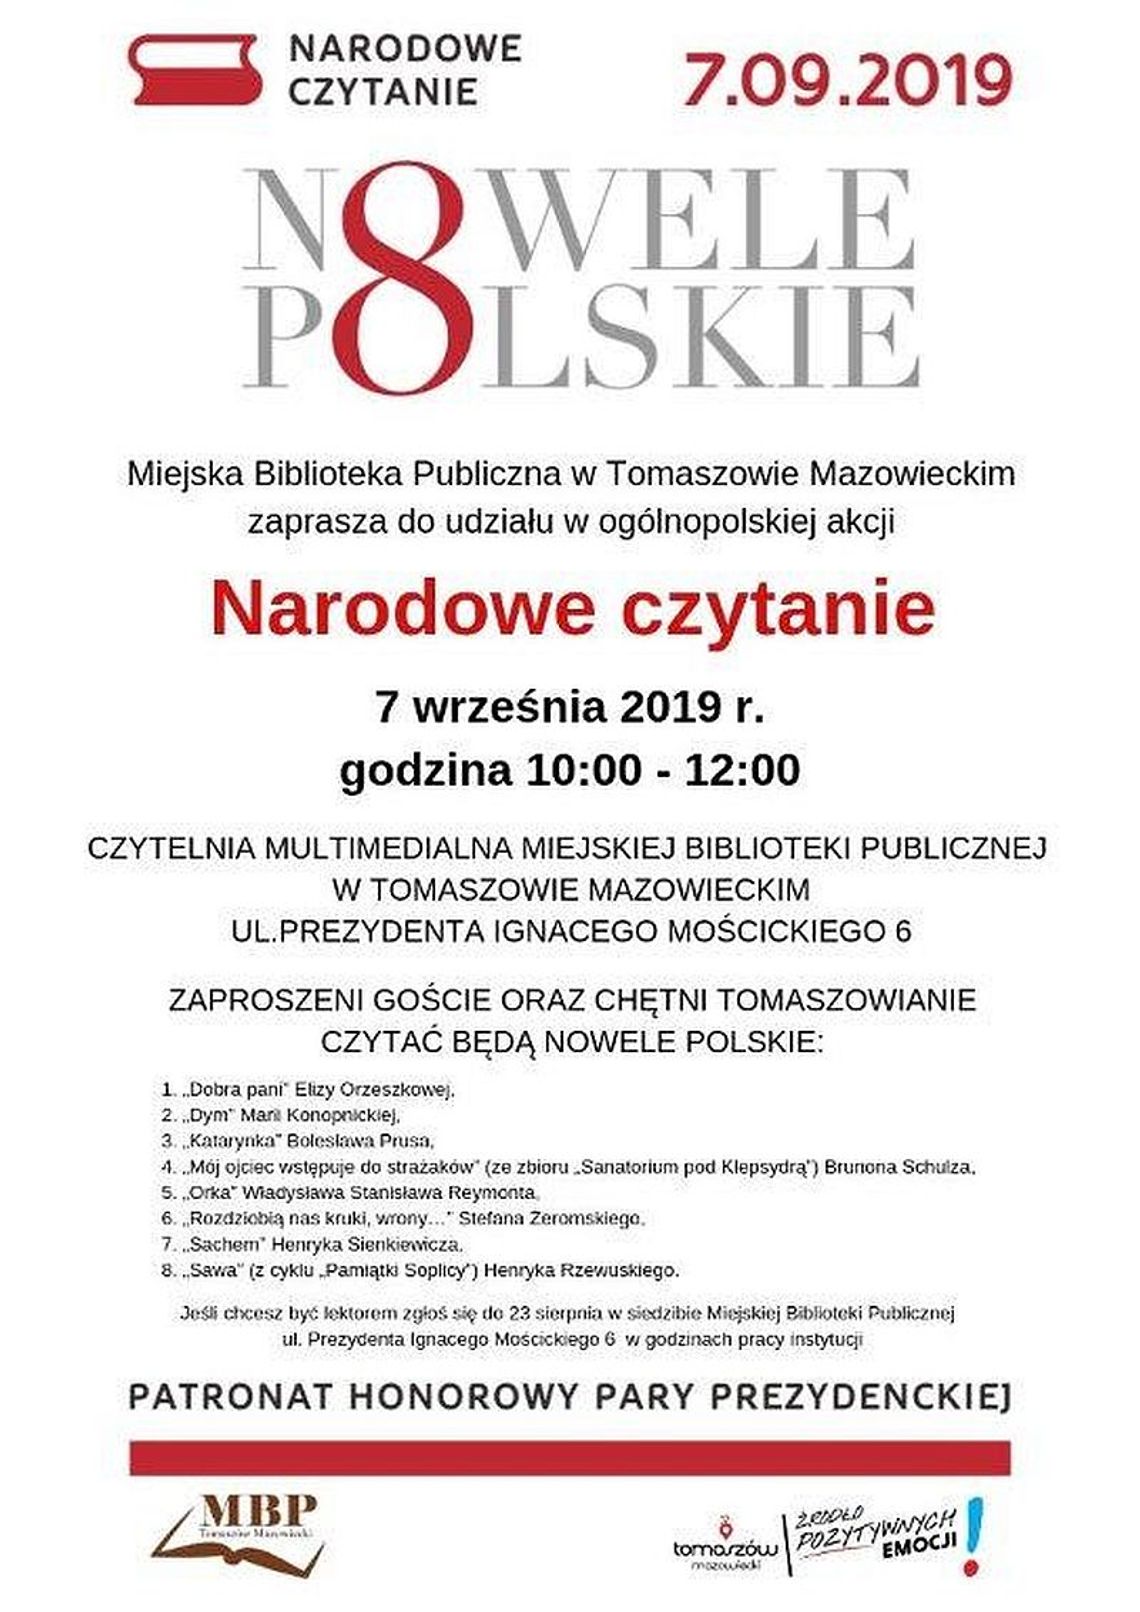 7 września Narodowe czytanie polskich nowel